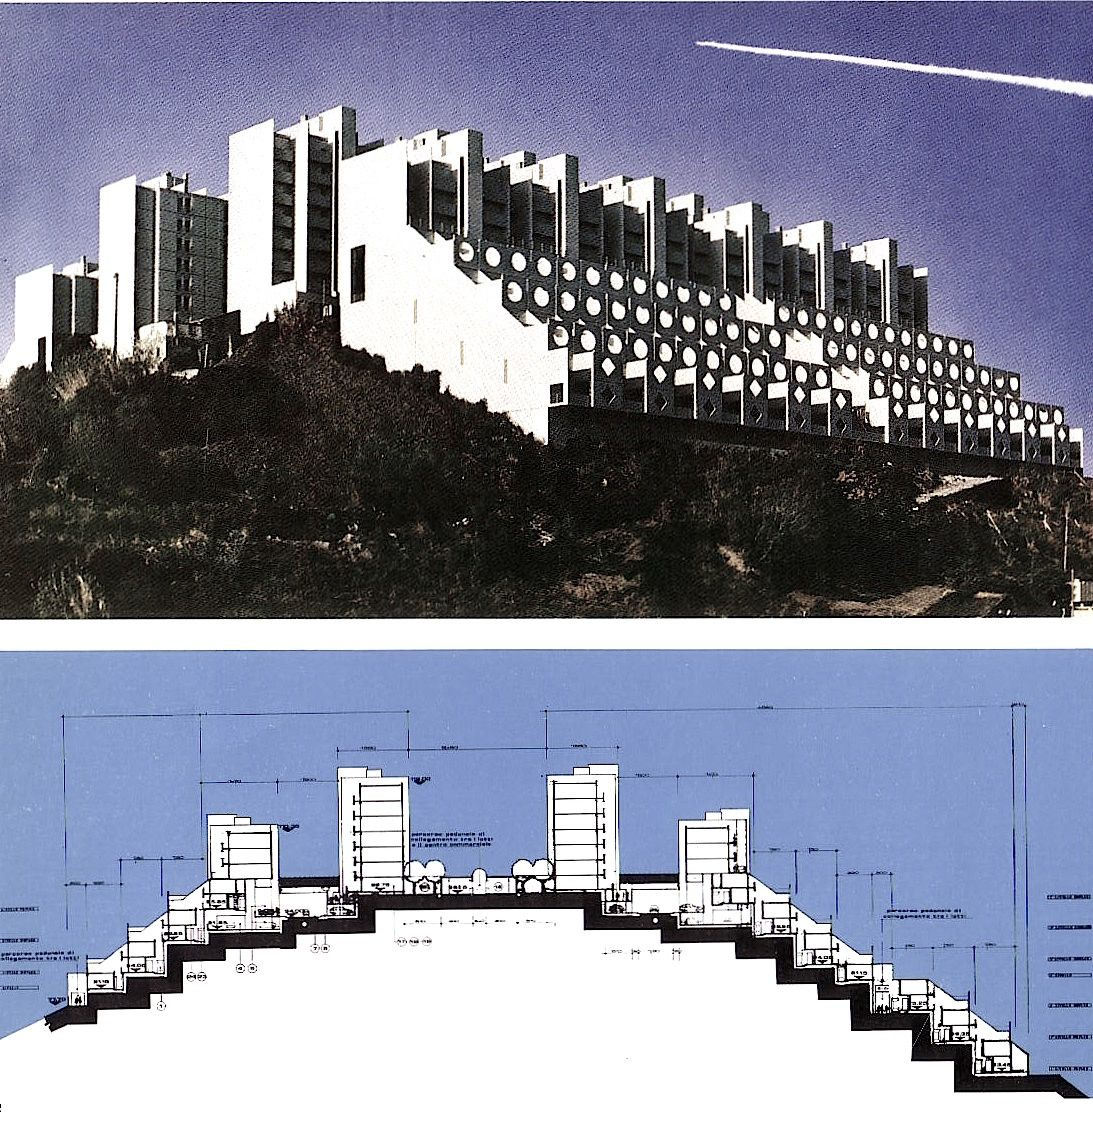 Immagini tratte da “Aldo luigi rizzo, percorsi di architettura", Costa e Nolan, 1986